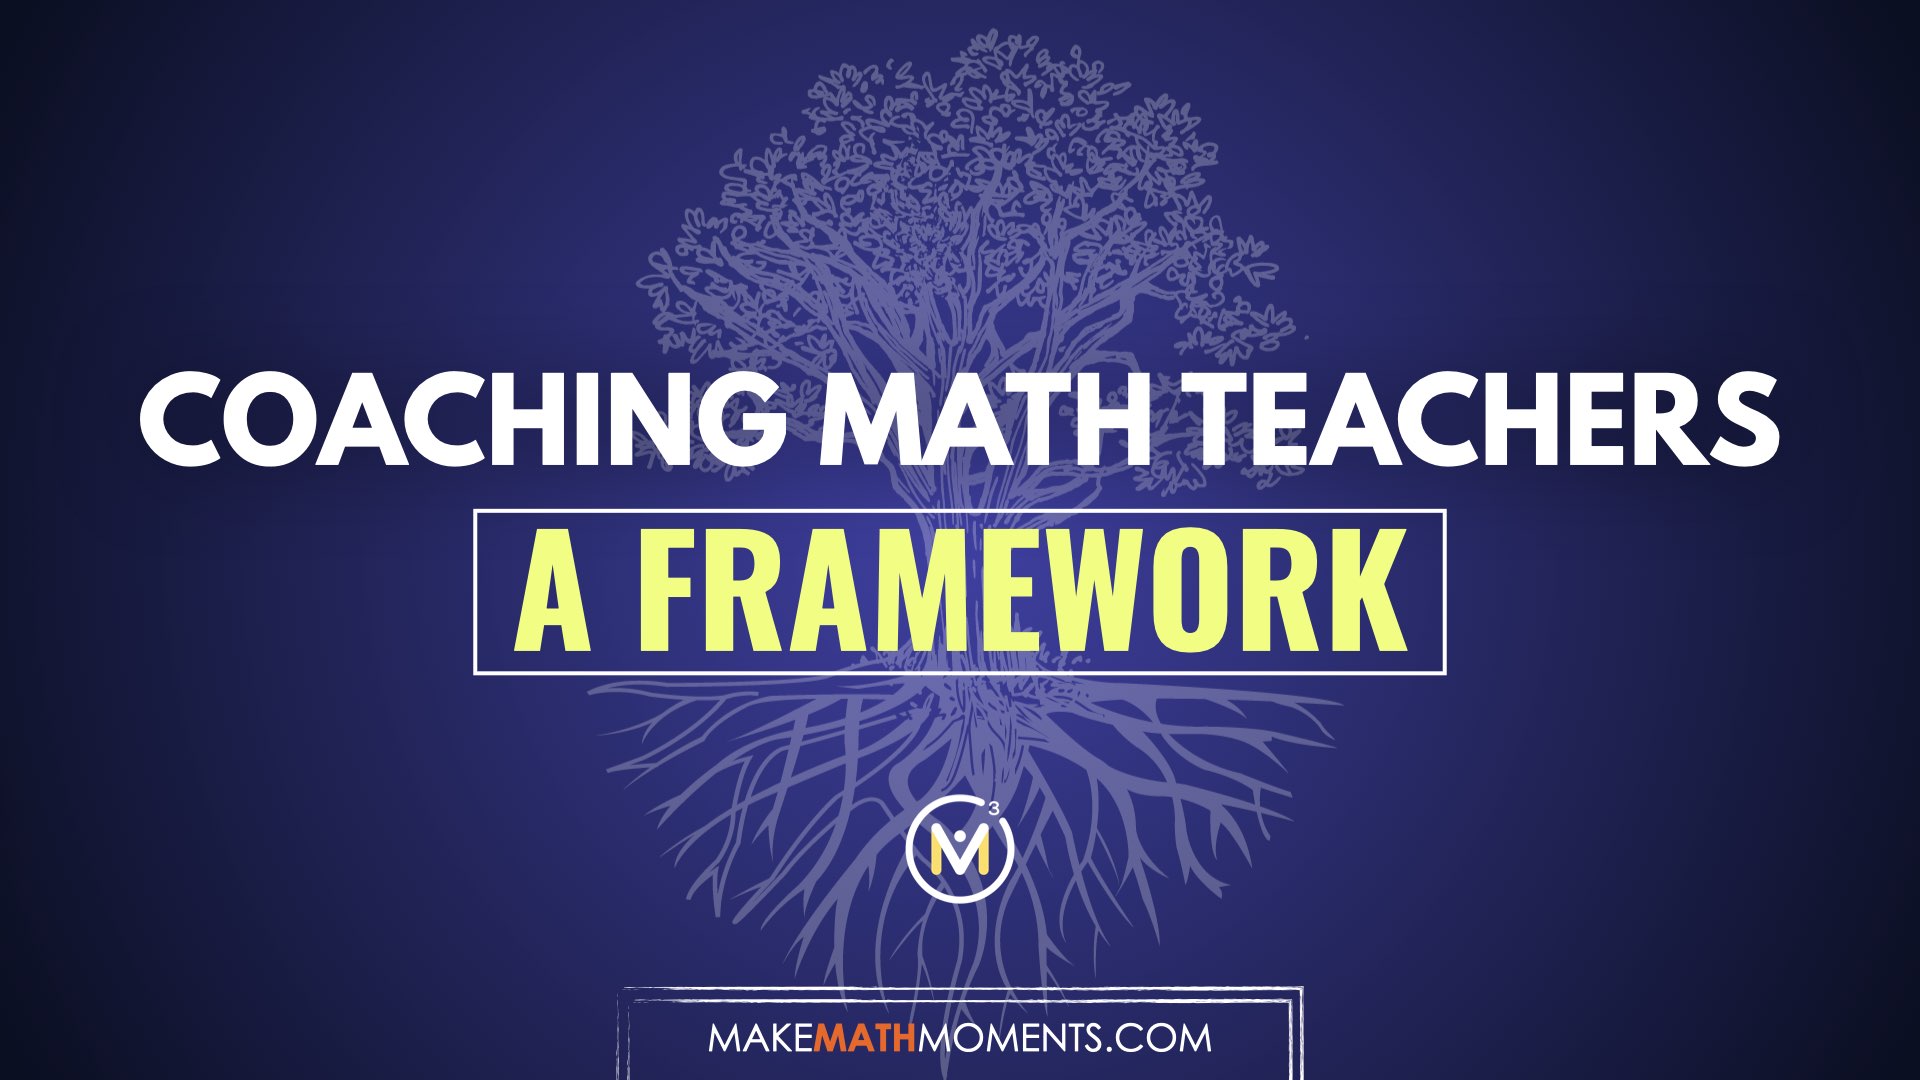 A Framework For Coaching Math Teachers